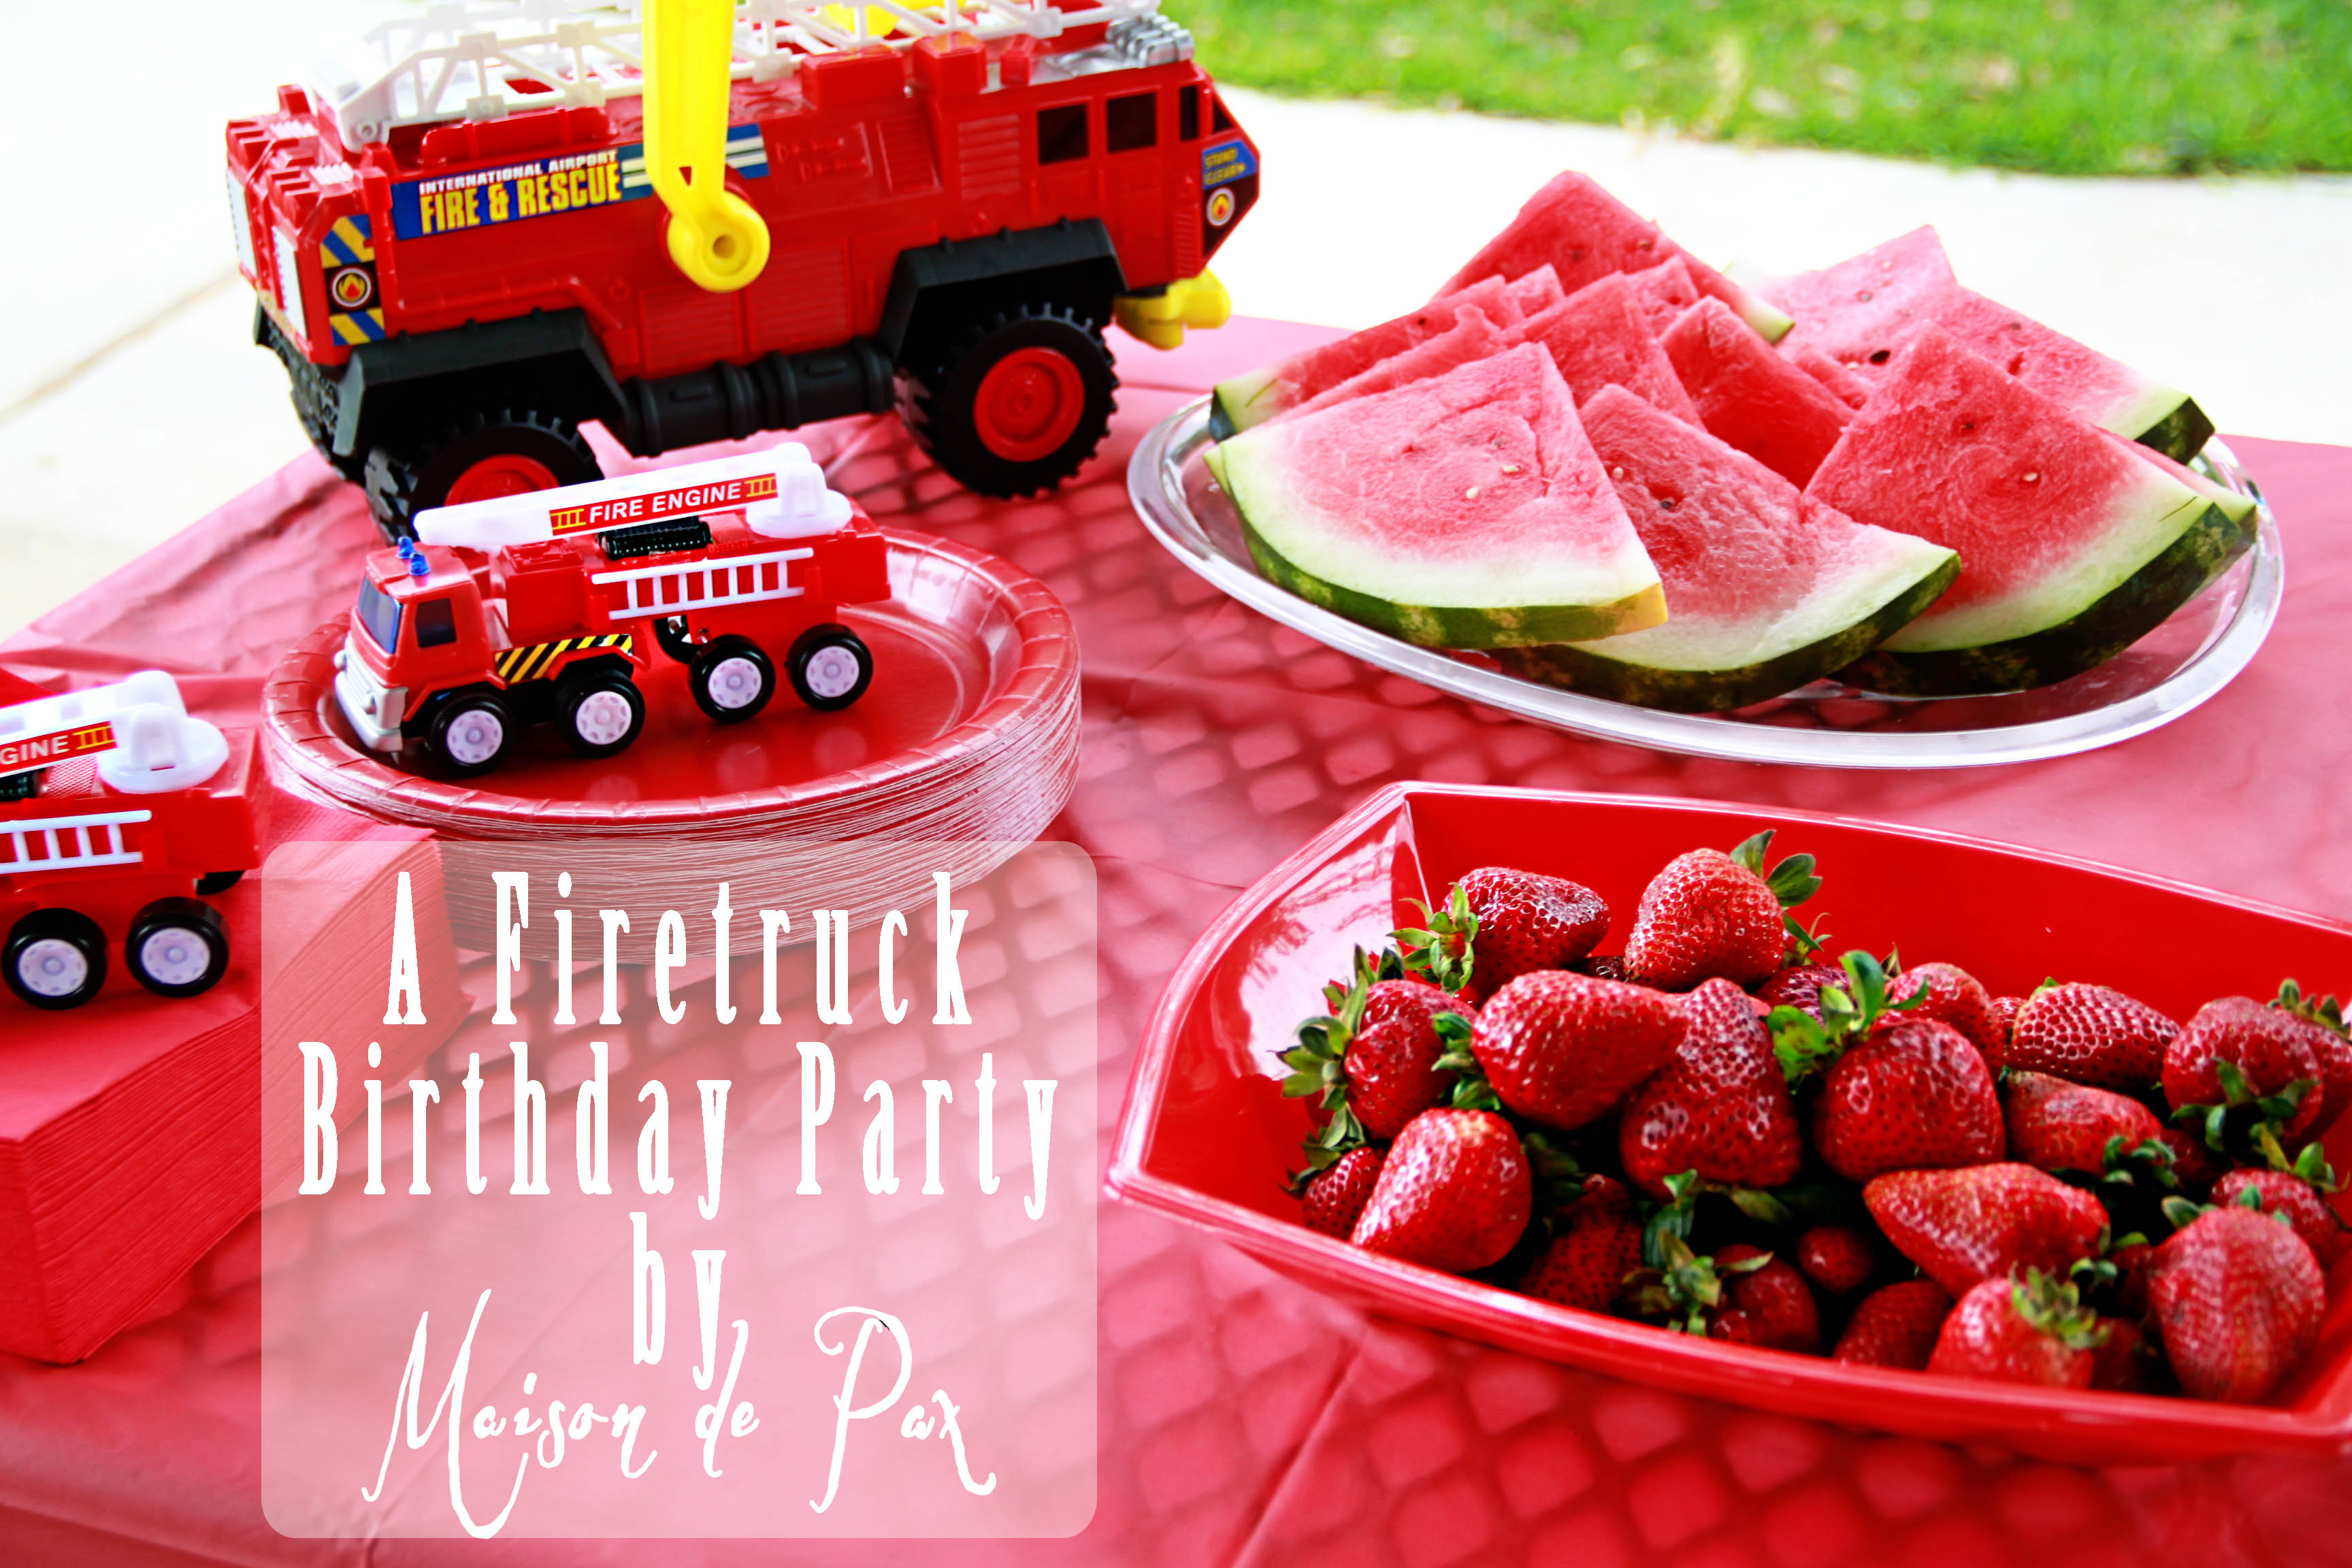 Firetruck Birthday Party Supplies
 A Smokin Hot Fire Truck Birthday Party Maison de Pax